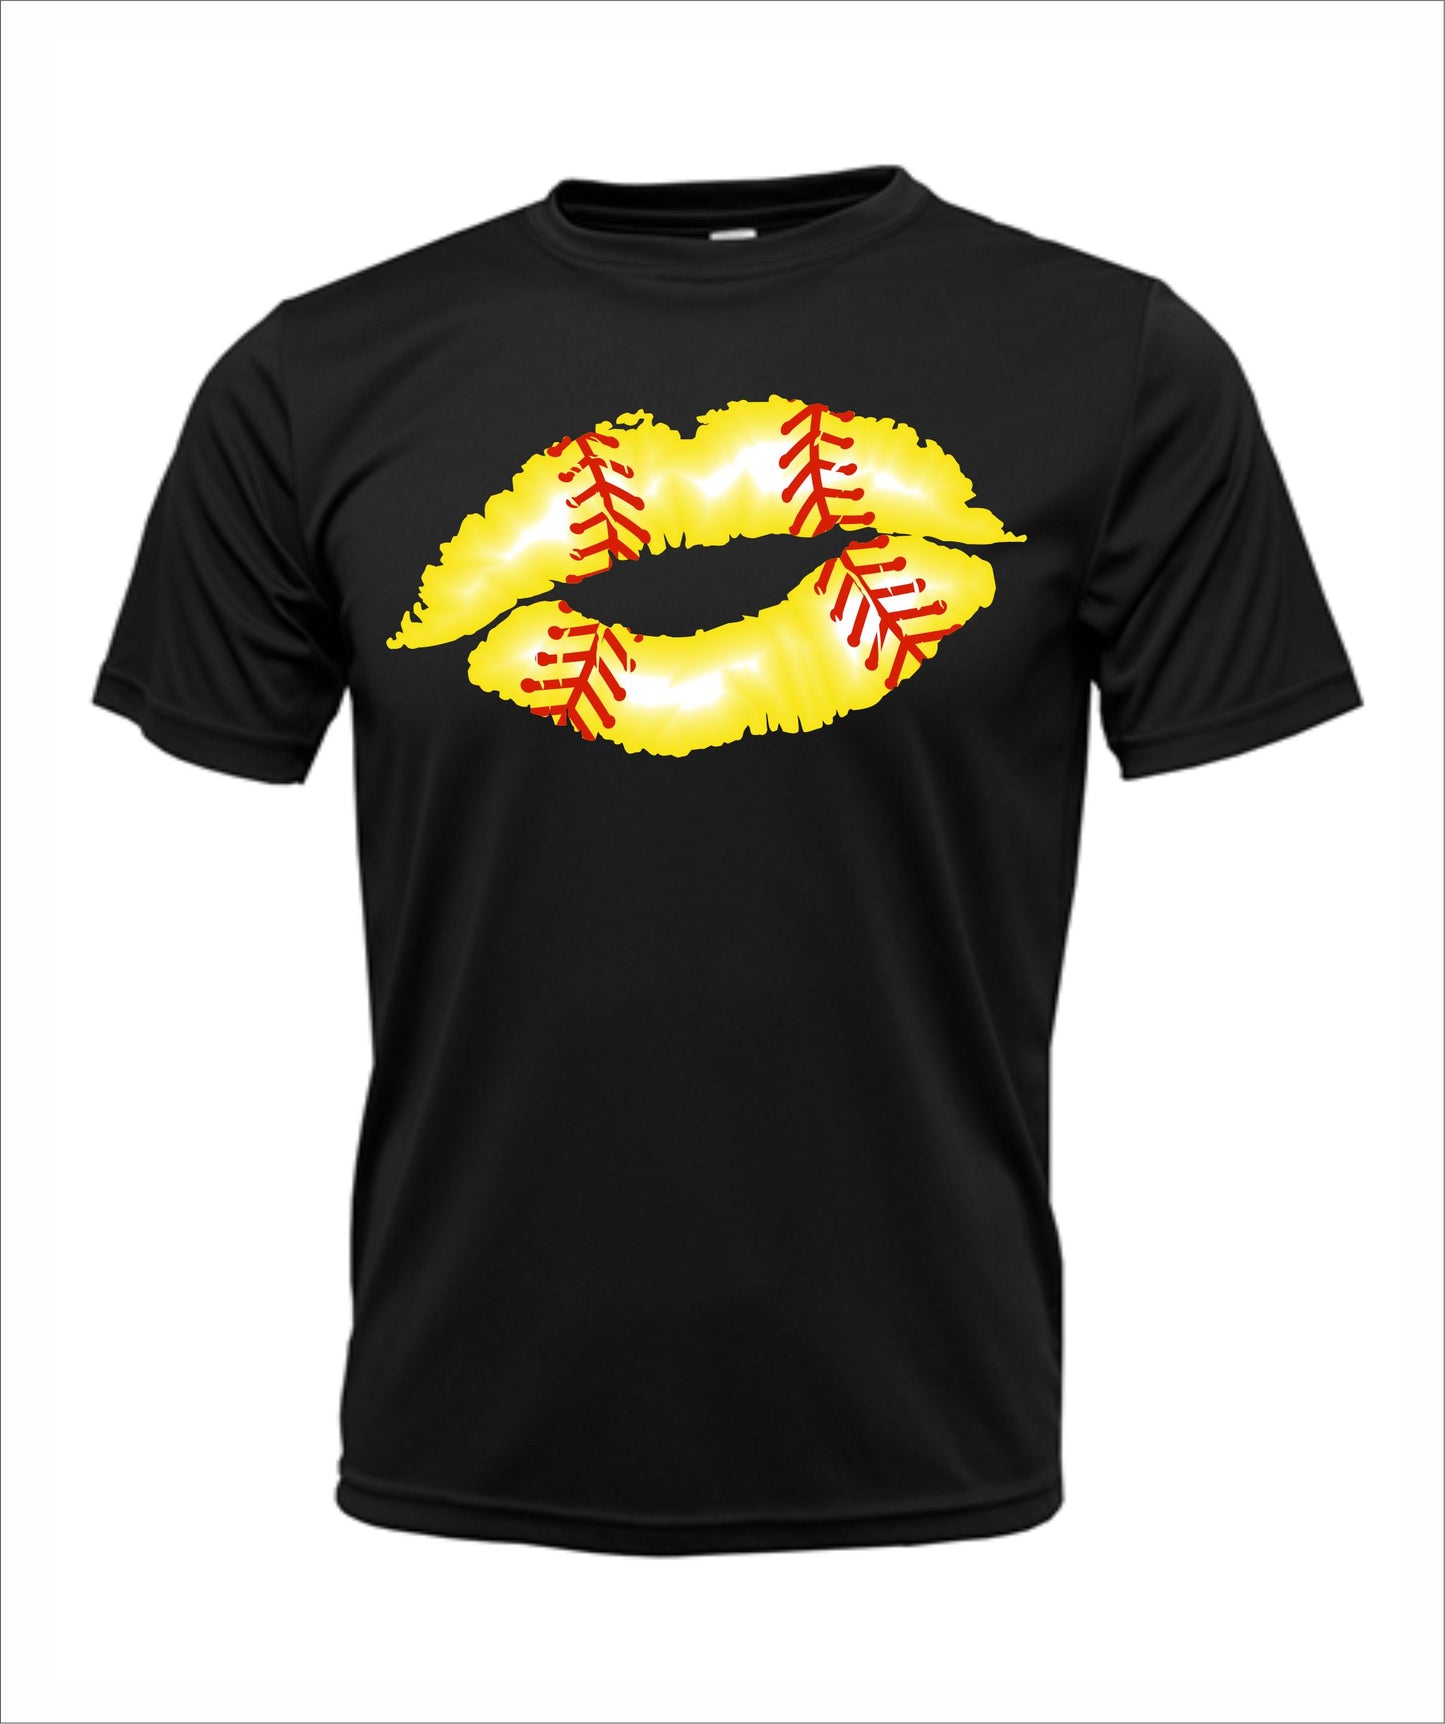 Softball "Kiss" Dri-Fit T-Shirt